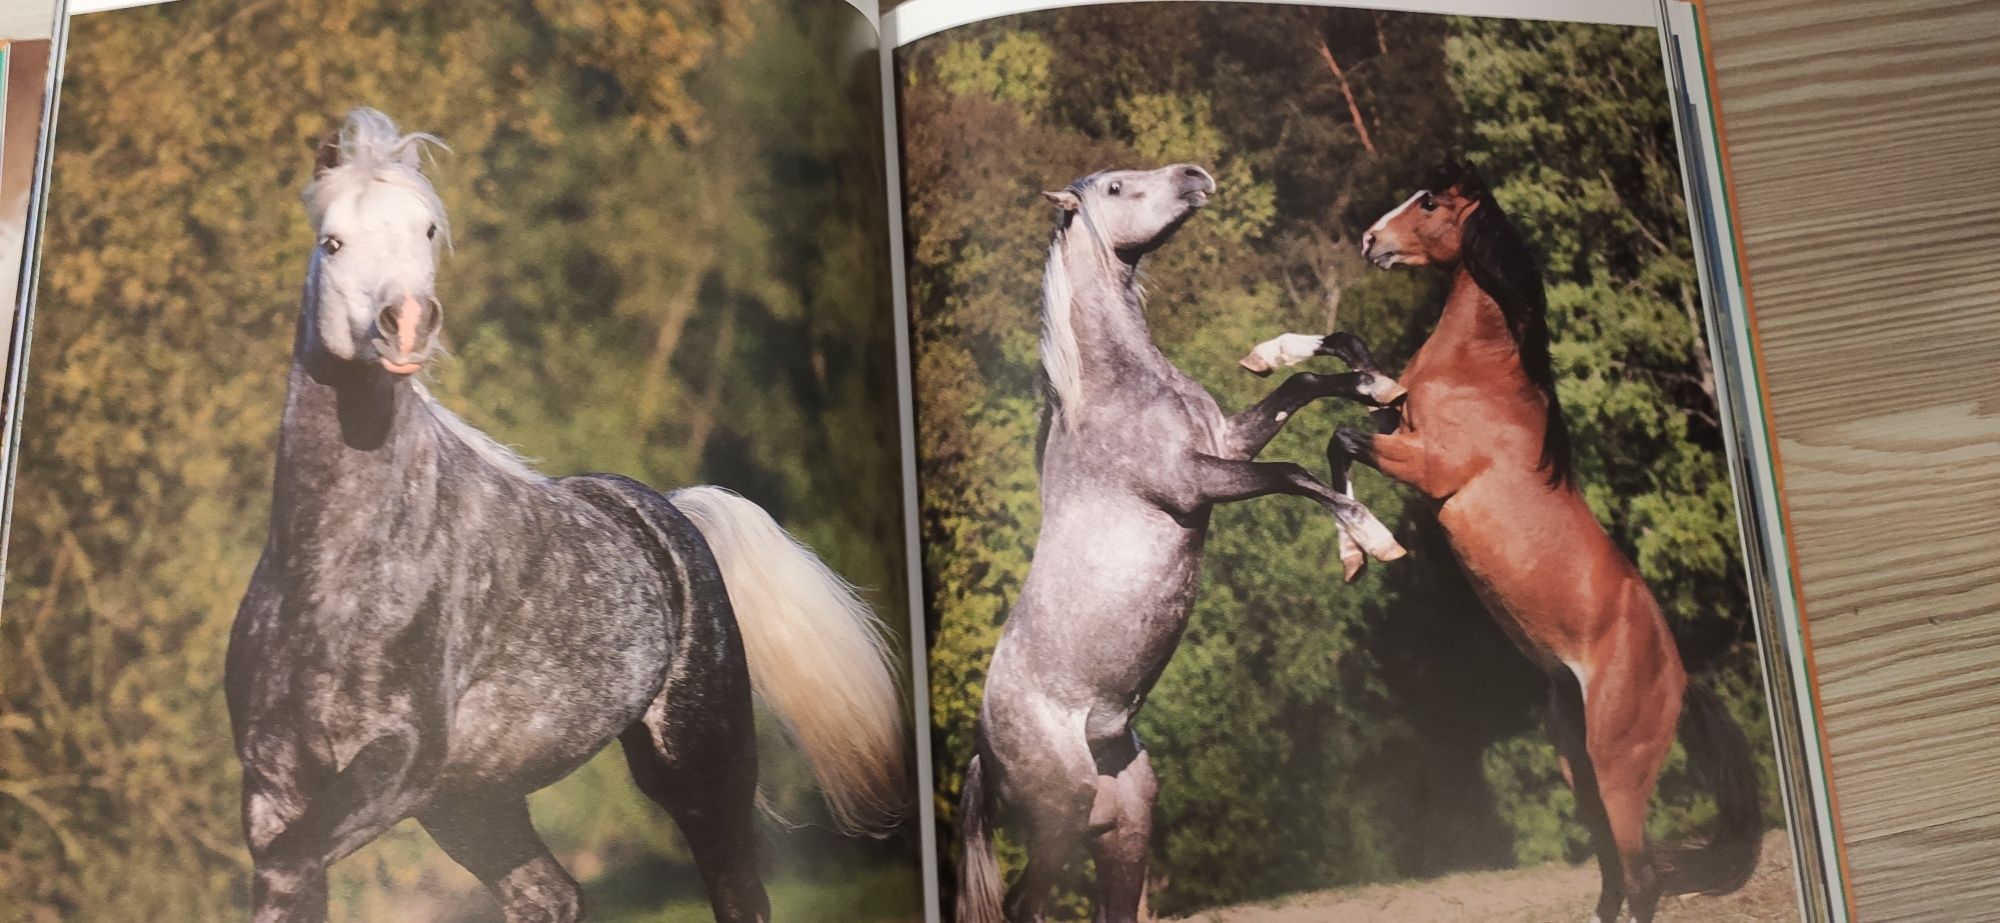 Konie. Poznaj fascynujący świat koni książka